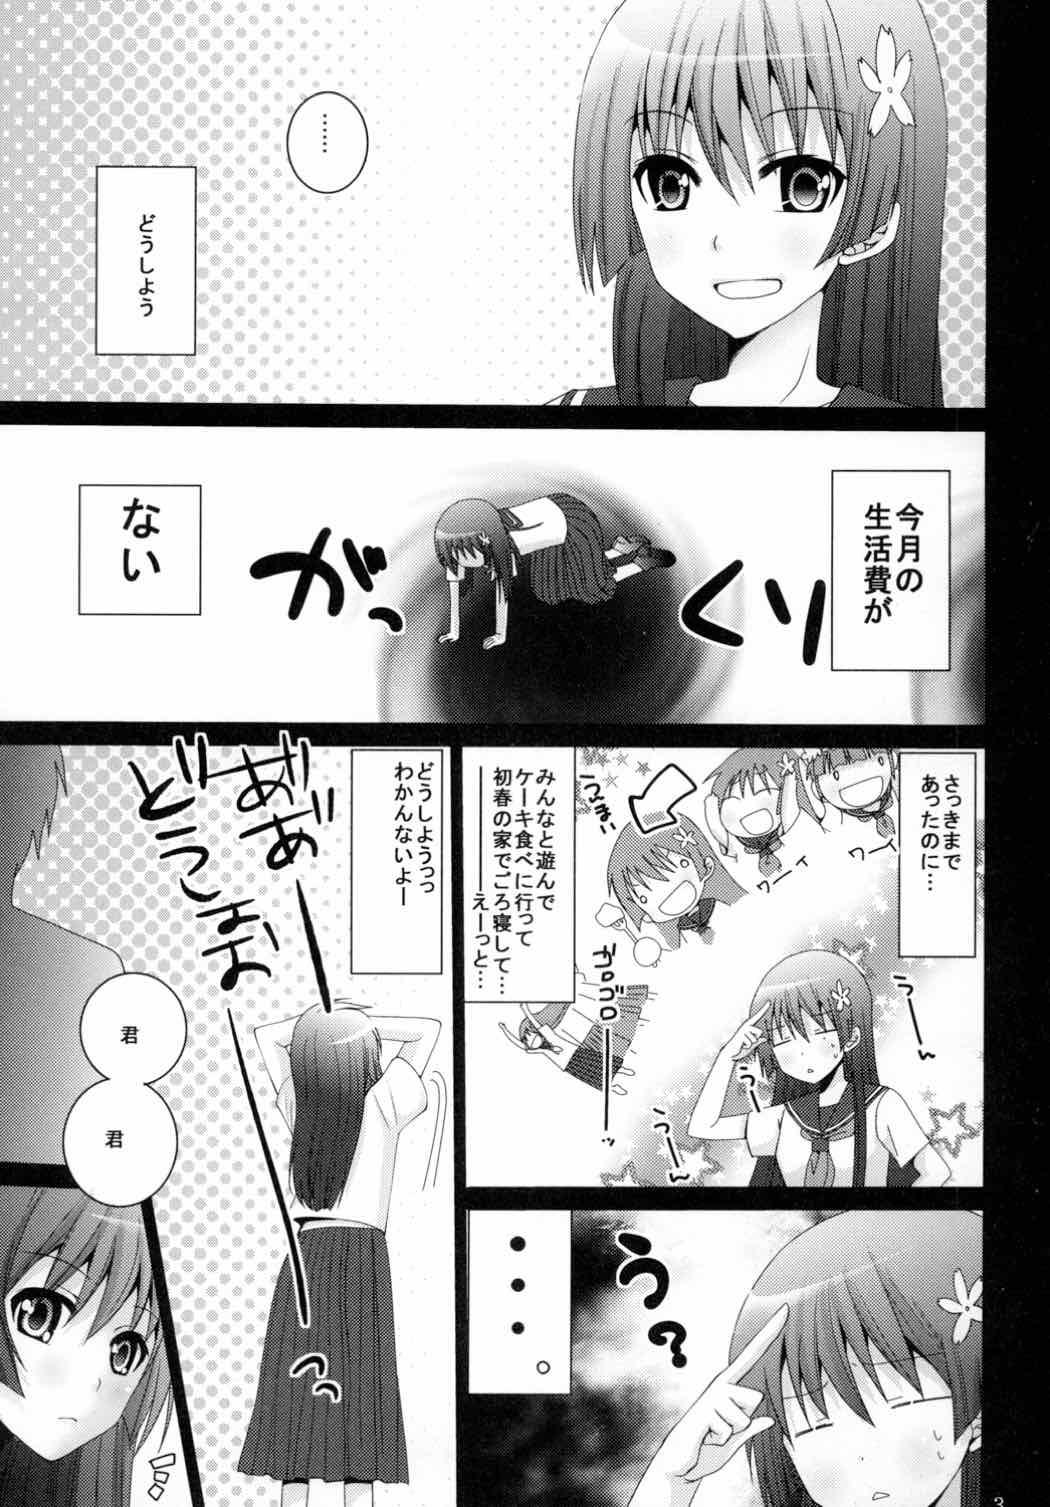 Com Maid in Saten - Toaru kagaku no railgun Hot Naked Women - Page 2